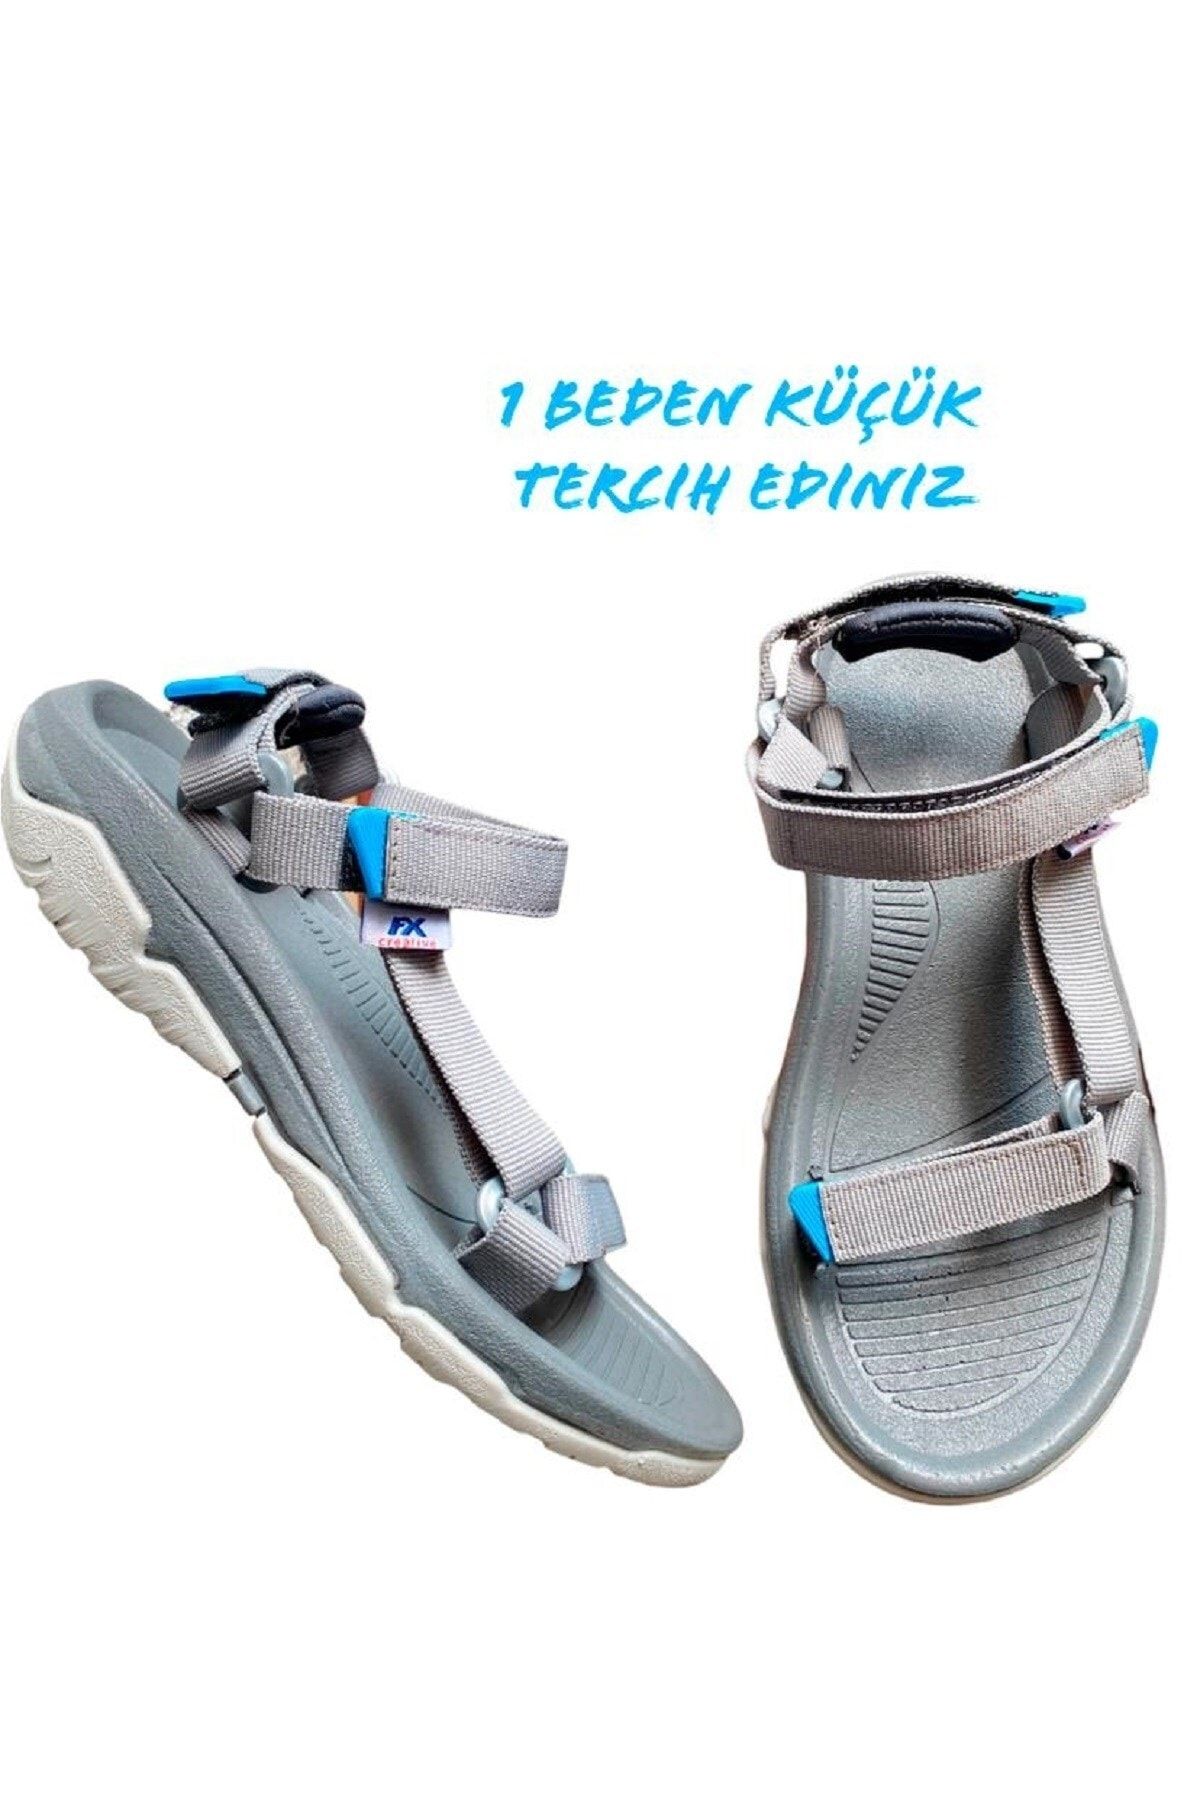 ALTUNTAŞ Fx Kaymaz Taban Cırt Cırtlı Çocuk Spor Sandalet Modeli - Gri Mavi ( Geniş Kalıp)